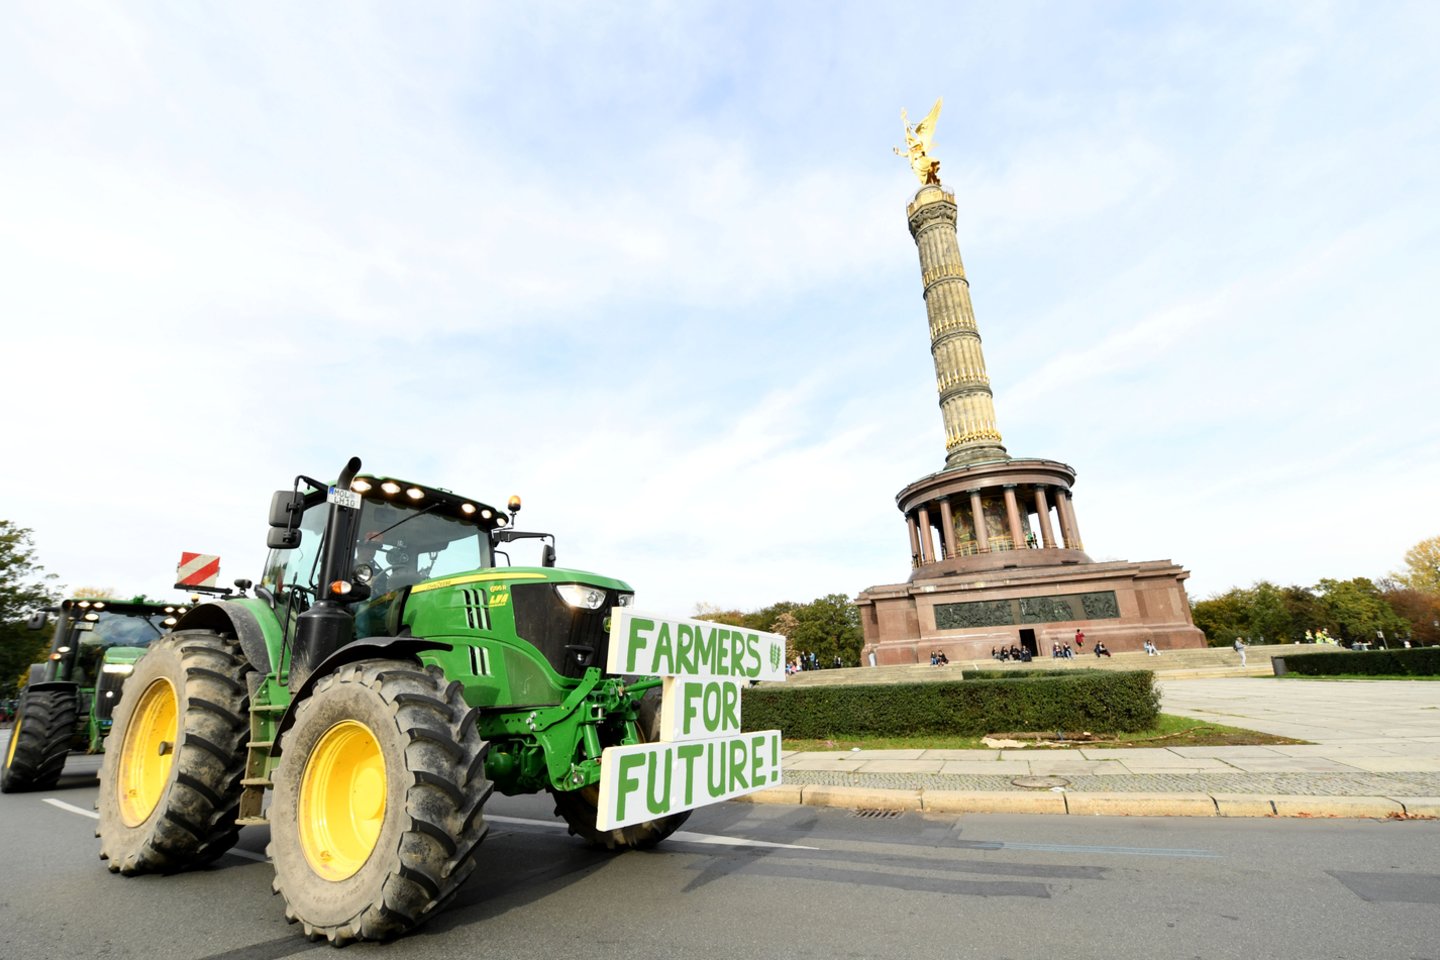  Maždaug 200 traktorių antradienį užblokavo Berlyno centrą, ūkininkams protestuojant prieš naujus vyriausybės planus, kurie, pasak demonstrantų, apsunkins ūkininkavimą, pranešė televizija „Welt“.<br> Reuters/Scanpix nuotr.